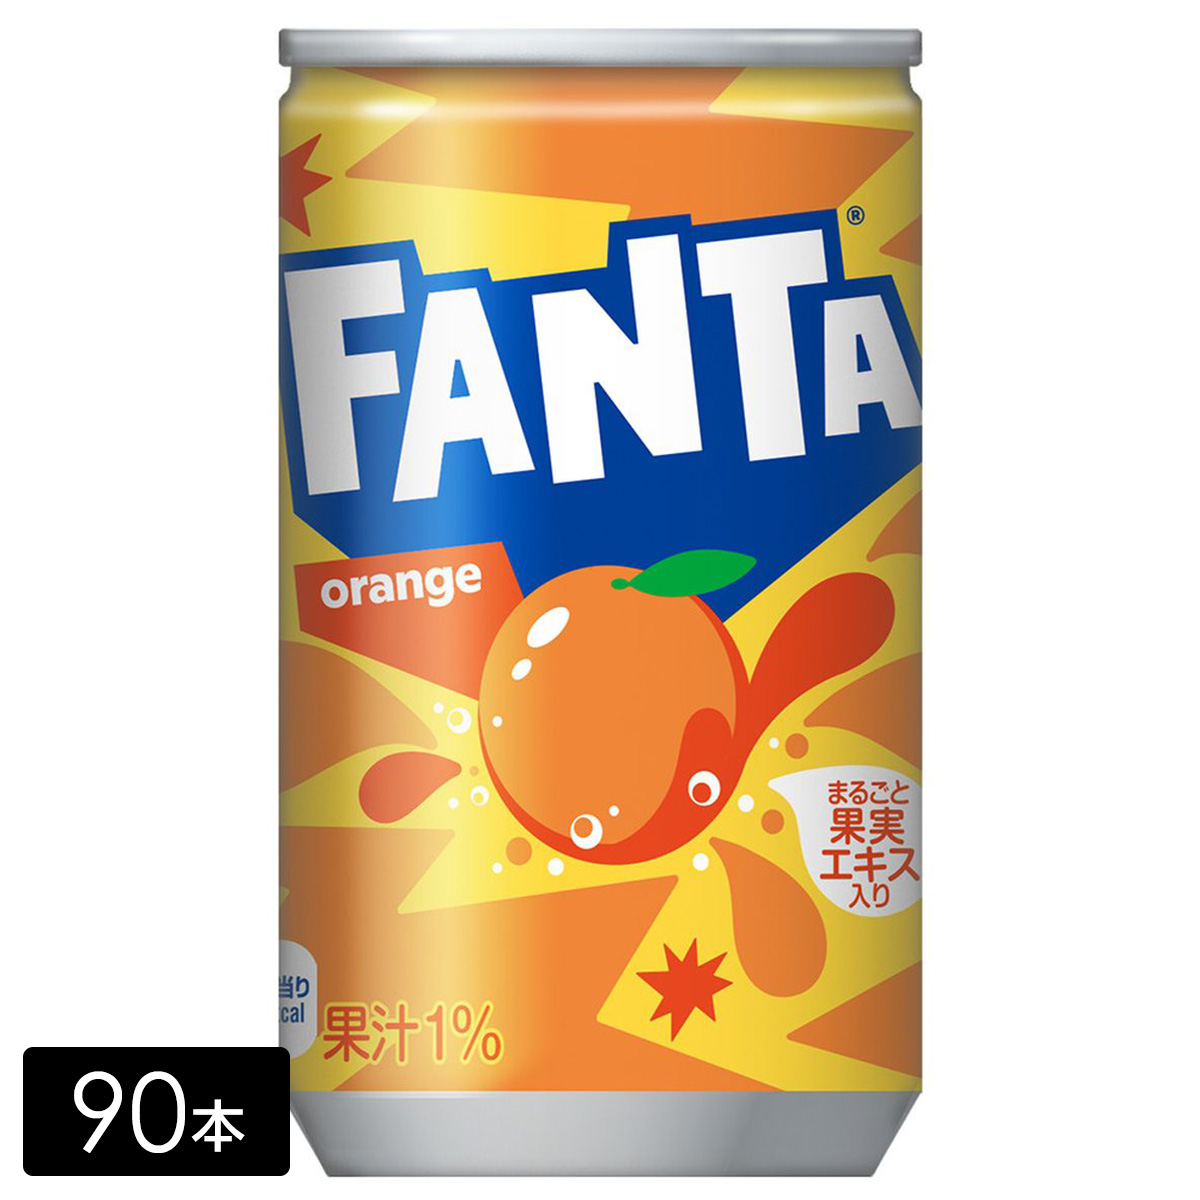 [送料無料]ファンタ オレンジ 果汁 160ml缶×90本(30本×3箱) 炭酸飲料 ペットボトル ケース売り まとめ買い